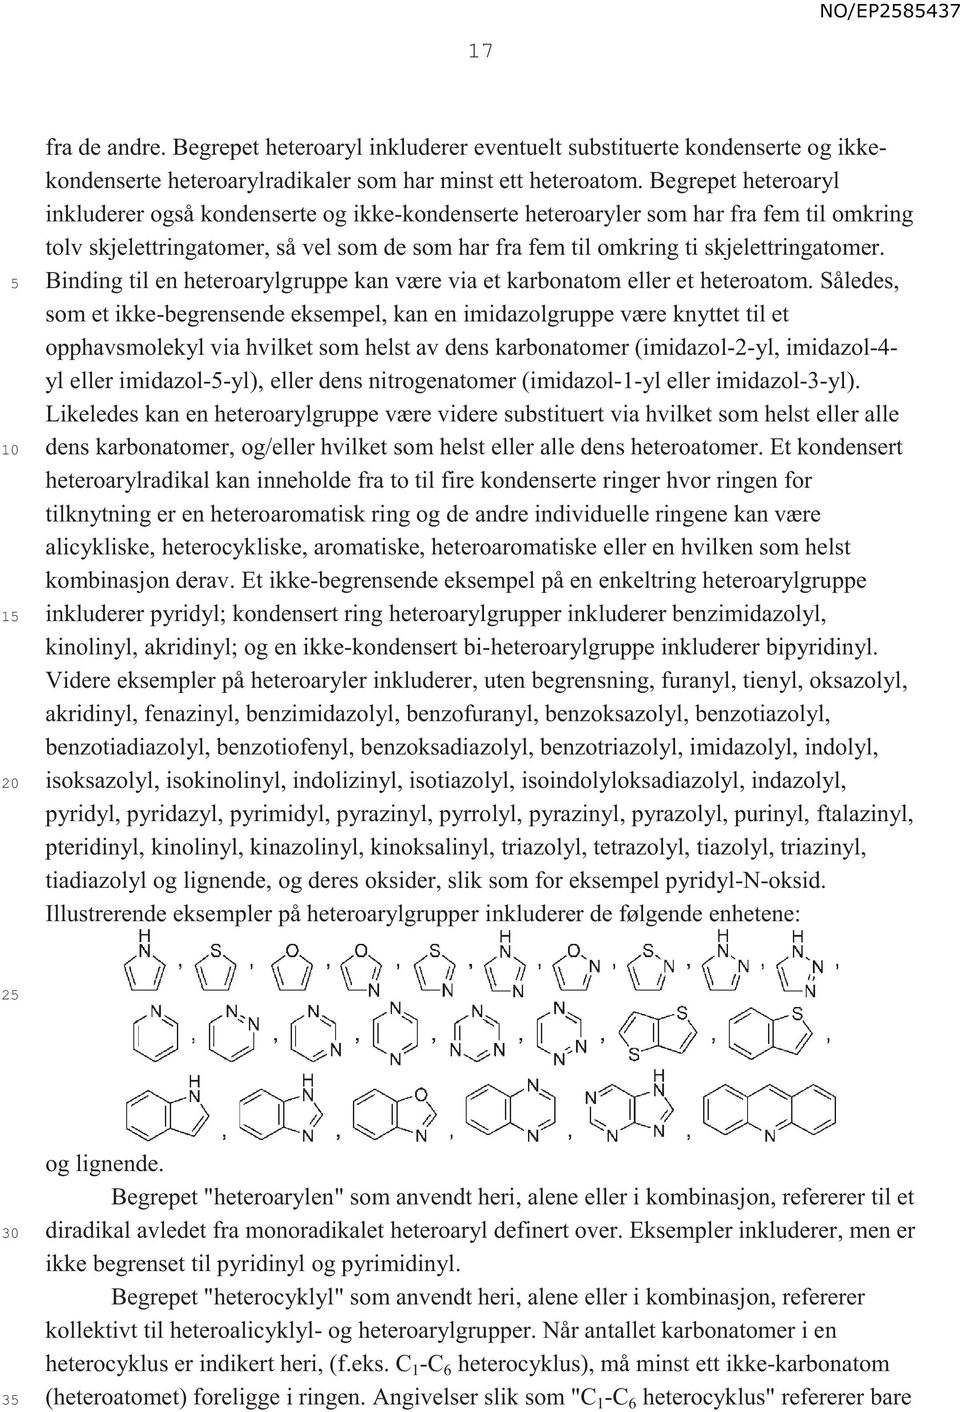 Binding til en heteroarylgruppe kan være via et karbonatom eller et heteroatom.